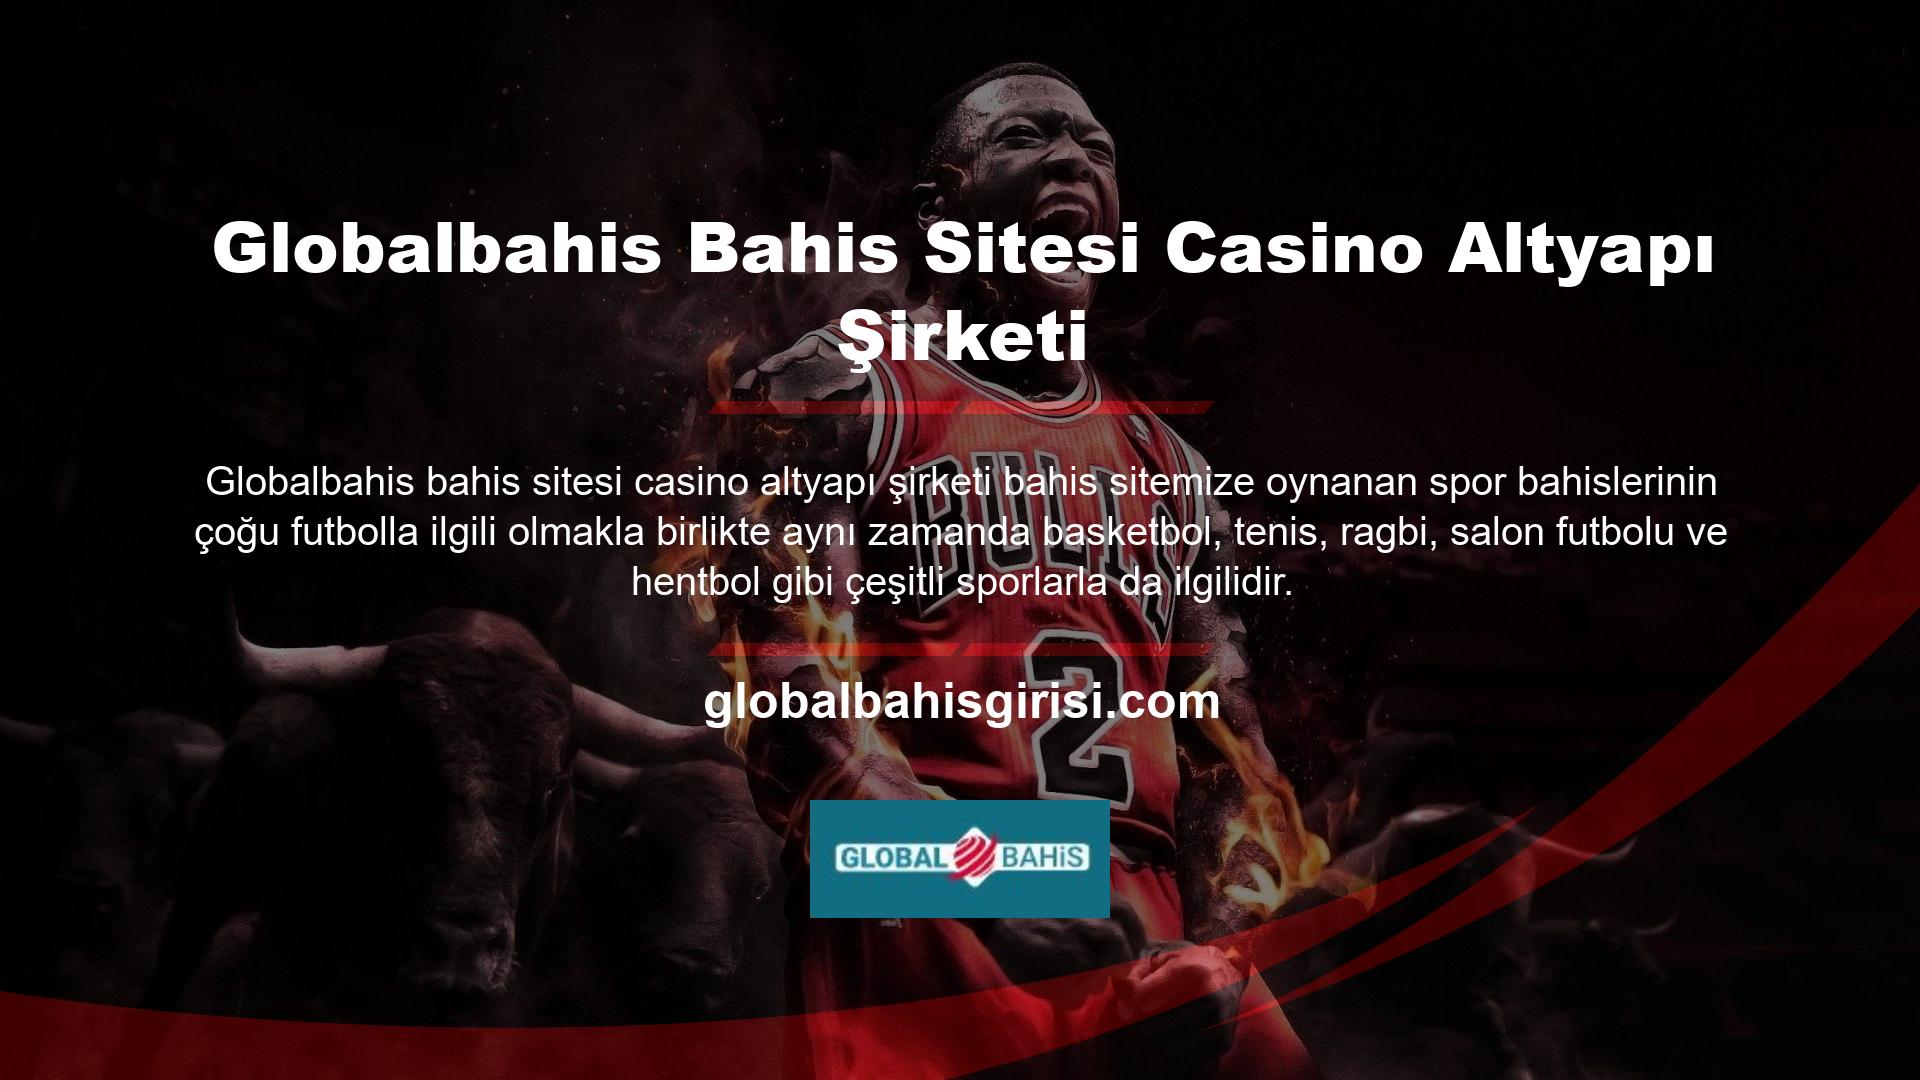 Casino altyapı şirketi Globalbahis bahis siteleri müşterilerine her zaman sağlam yatırım tavsiyeleri sunar